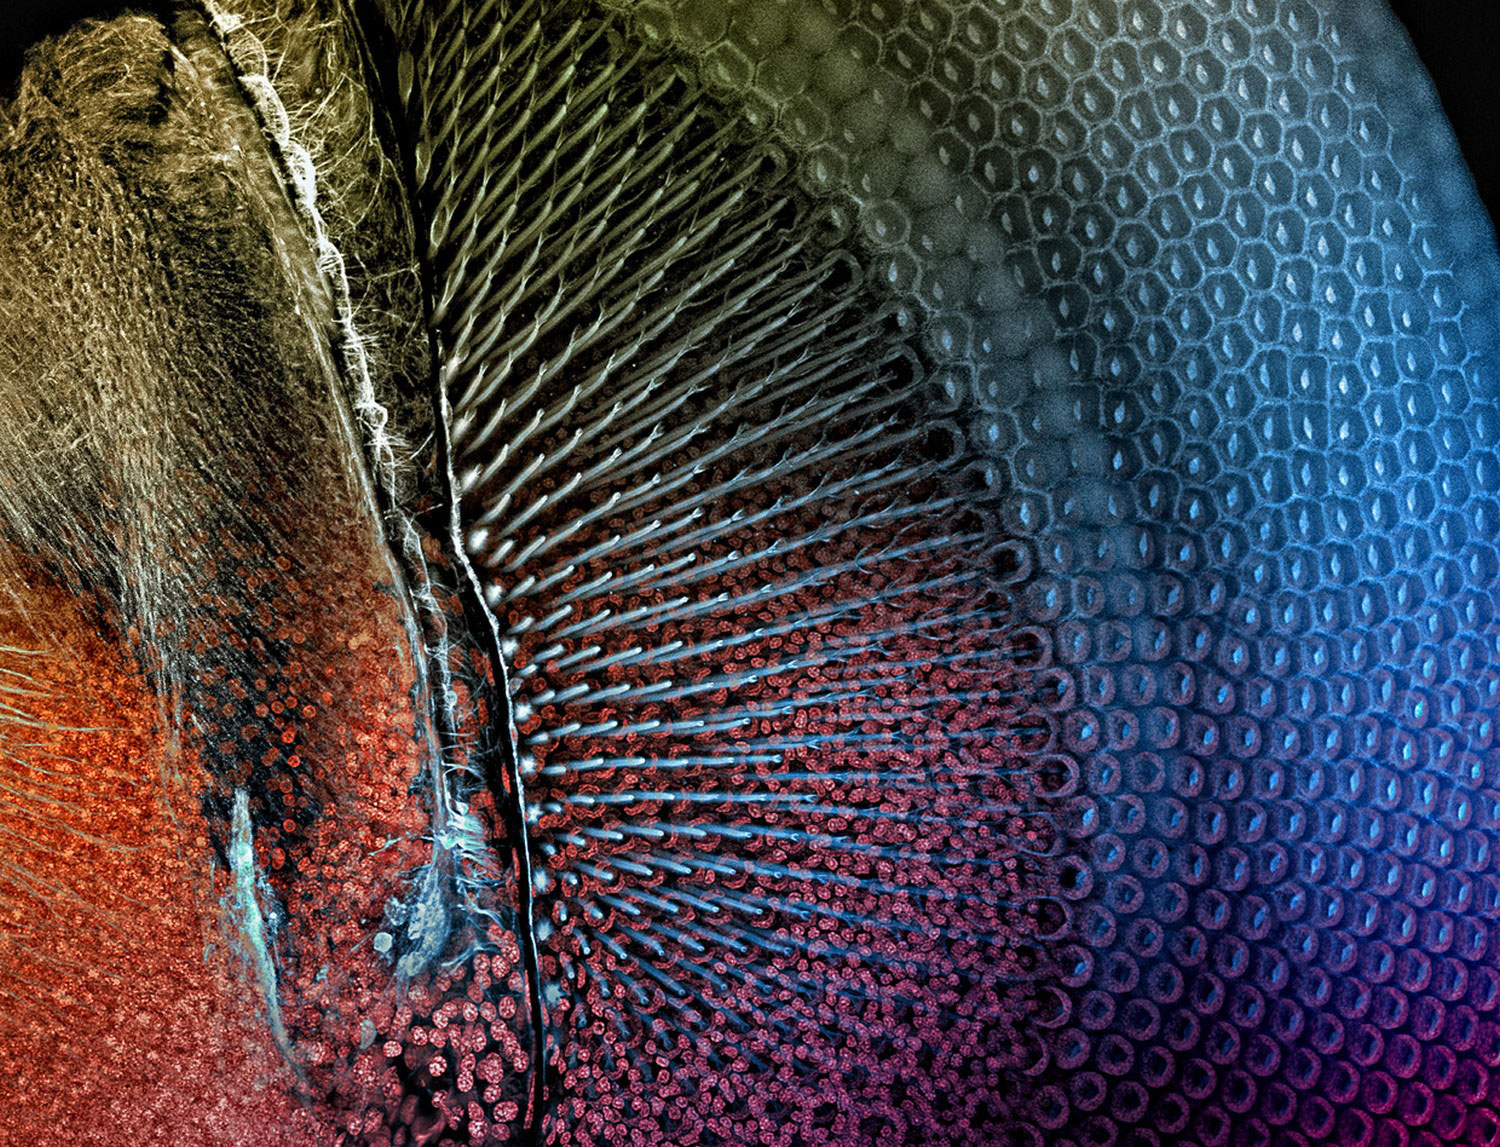 Глаз стрекозы под микроскопом, фото